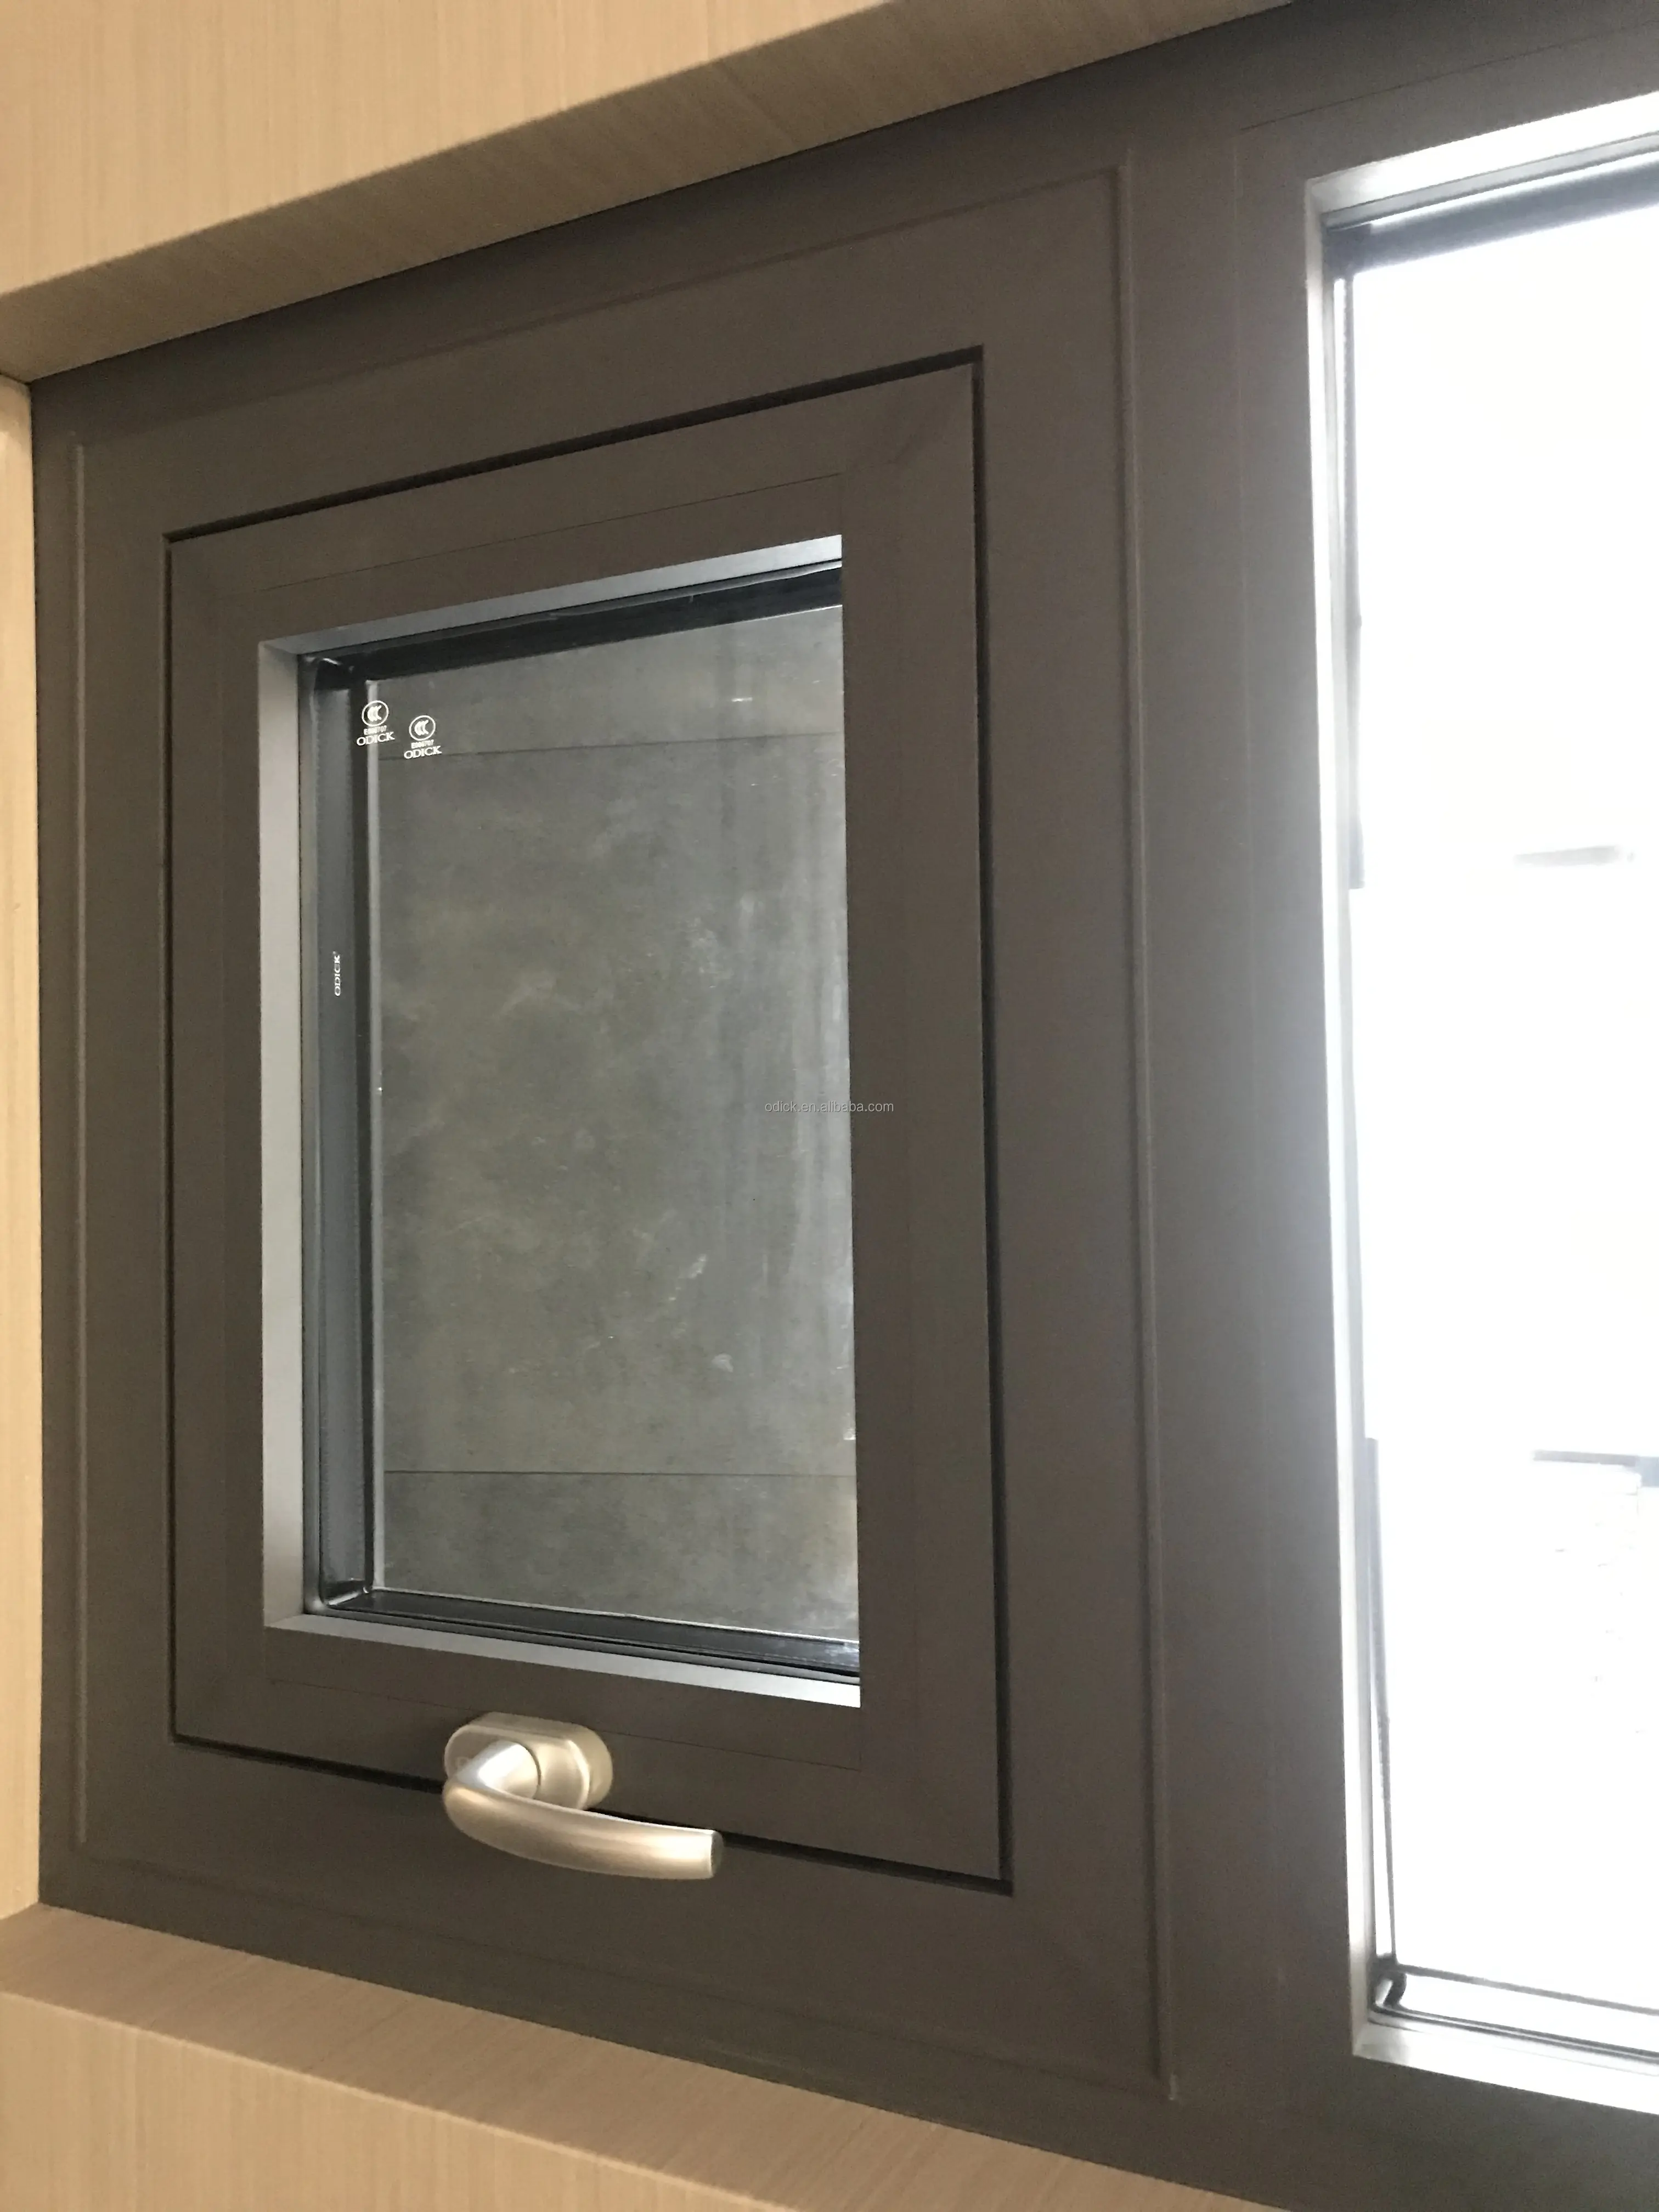 Auvent fenêtre rester haut suspendu insonorisé lucarne fenêtre rétractable auvent conception aluminium moderne balançoire conception graphique persienne